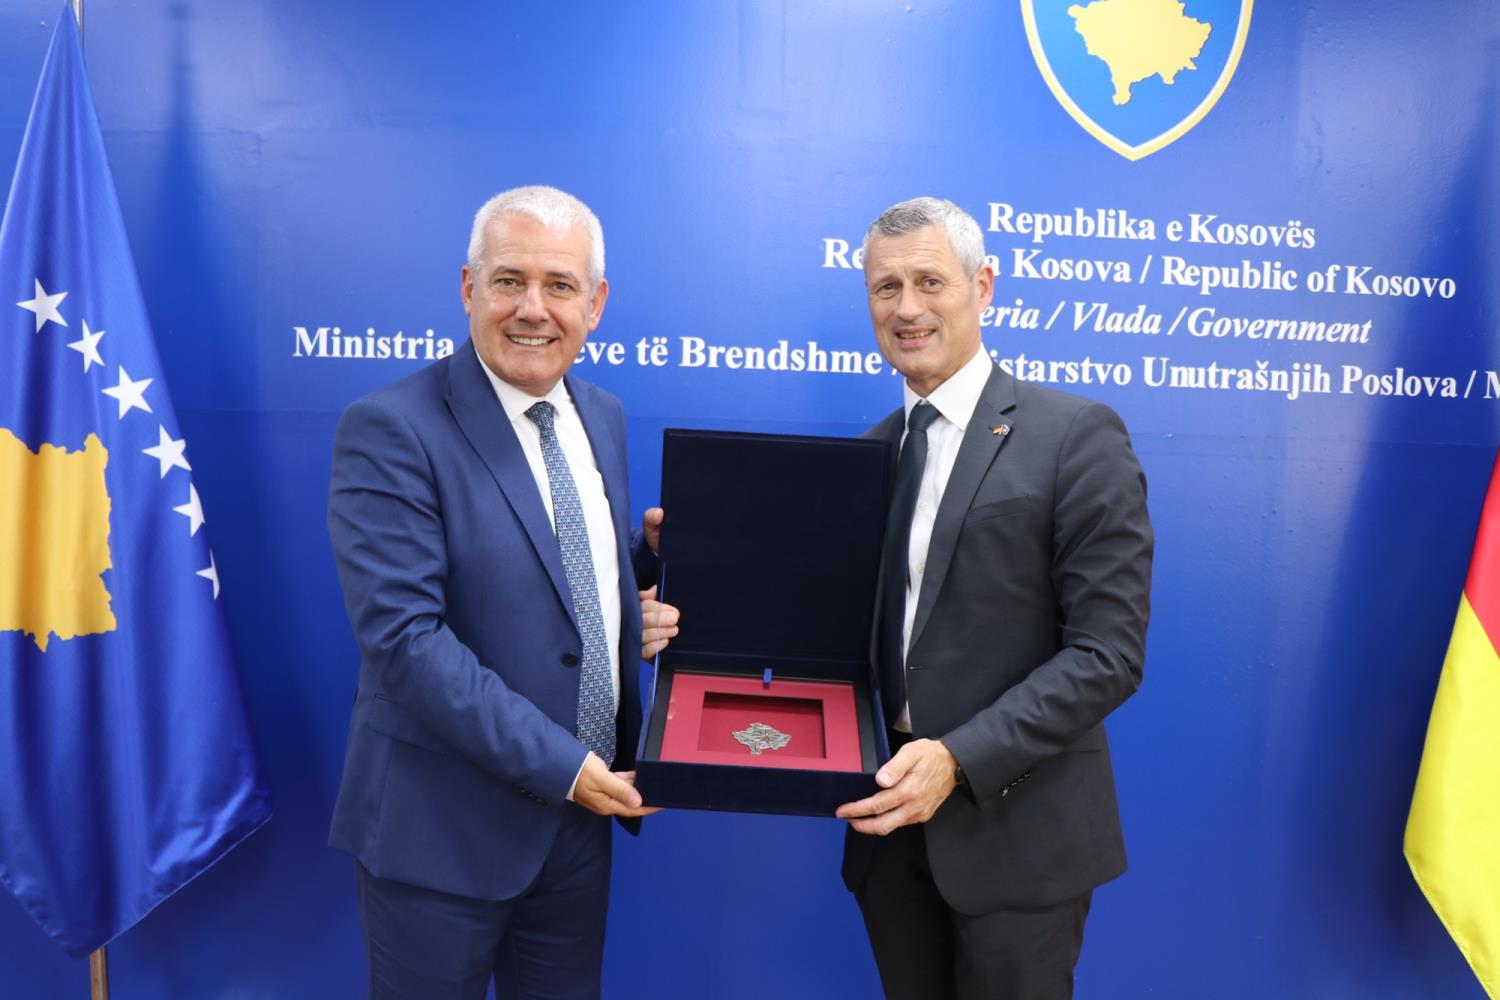  Ministar Unutrašnjih Poslova Xhelal Sveçla  ugostio je na sastanku sekretara Saveznog Ministarstva Unutrašnjih Poslova Nemačke Bernd Krosser.